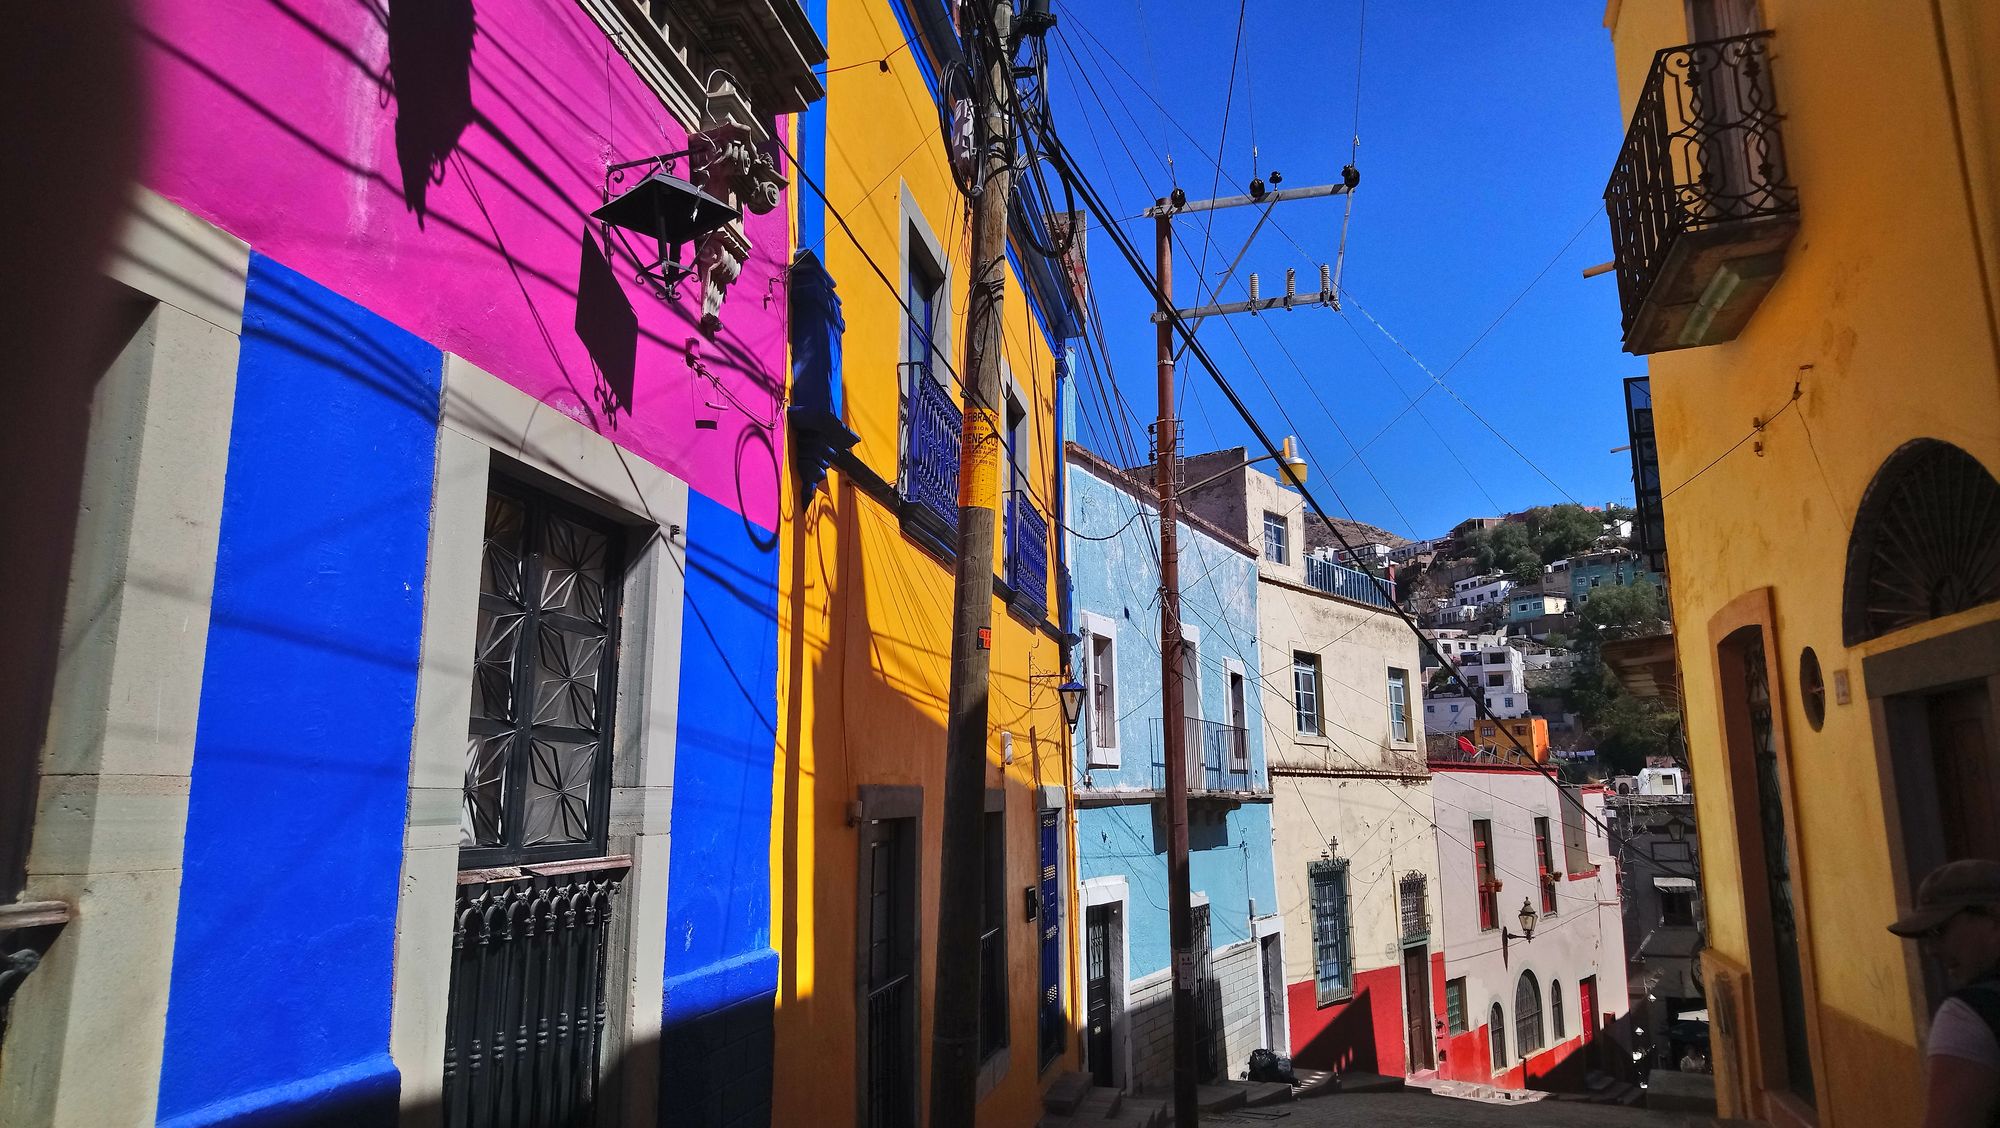 calle en maxico con fachadas de casas pequeñas de dos pisos de colores